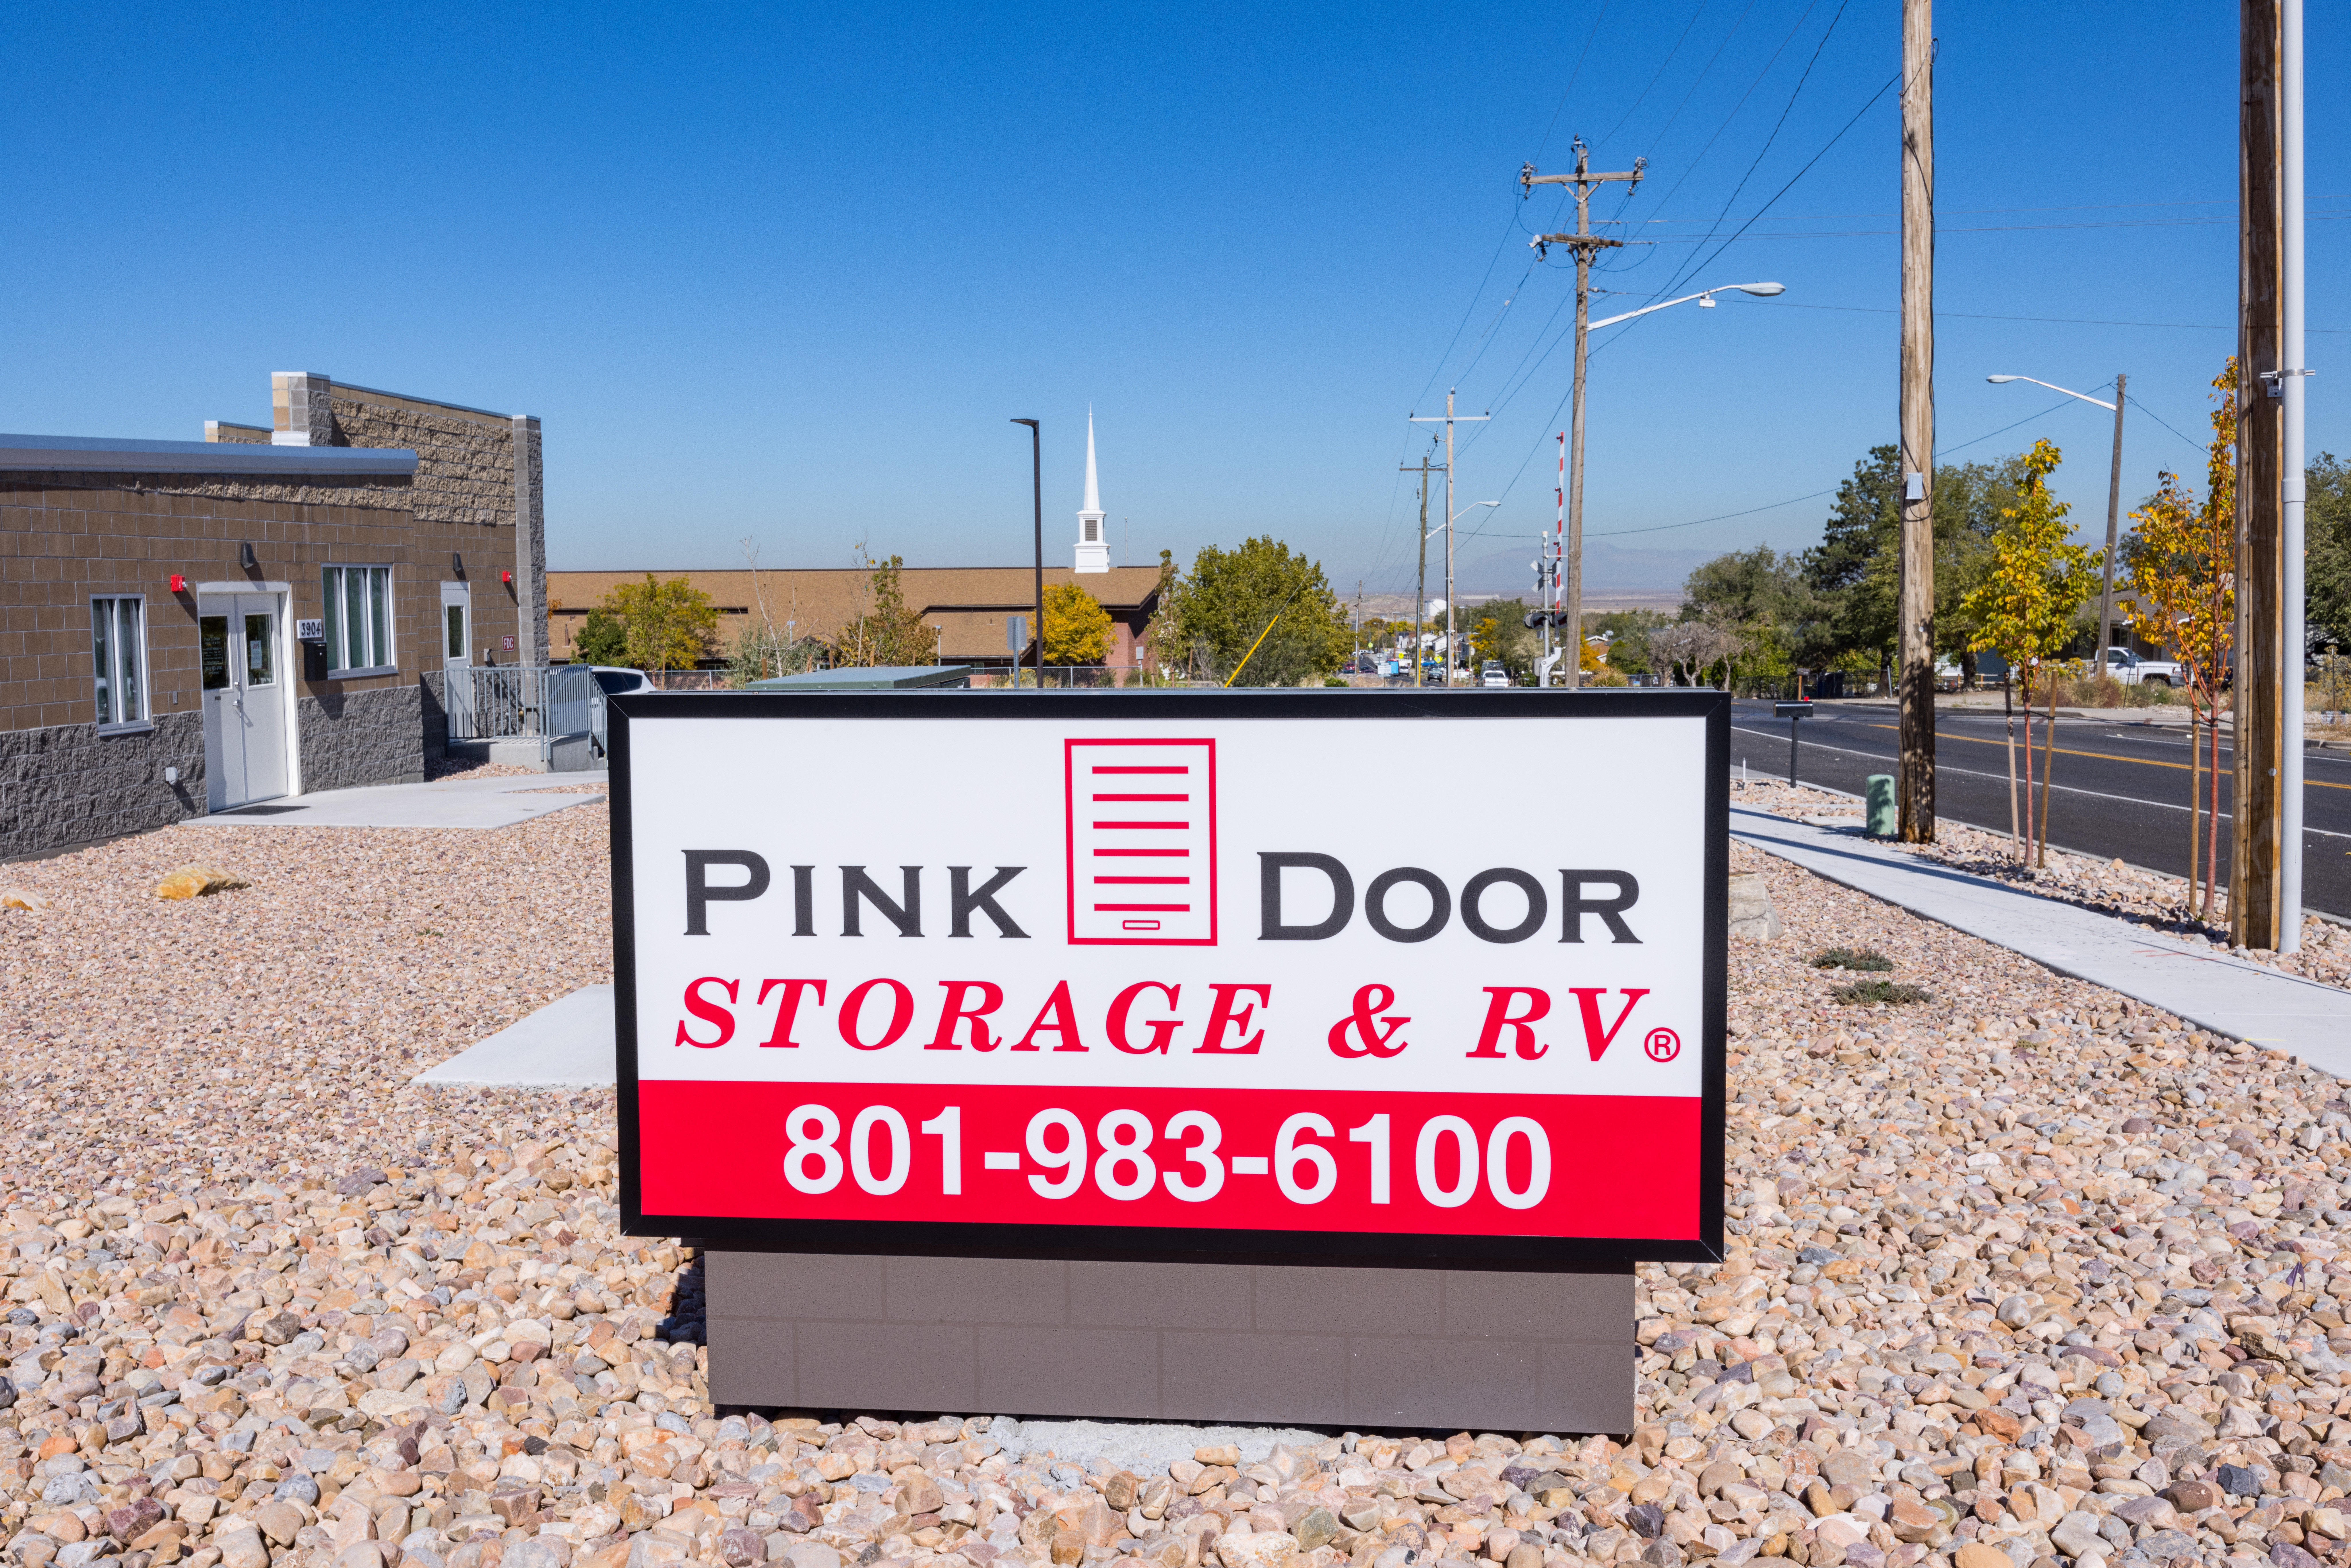 Pink Door Storage & RV - Magna, UT